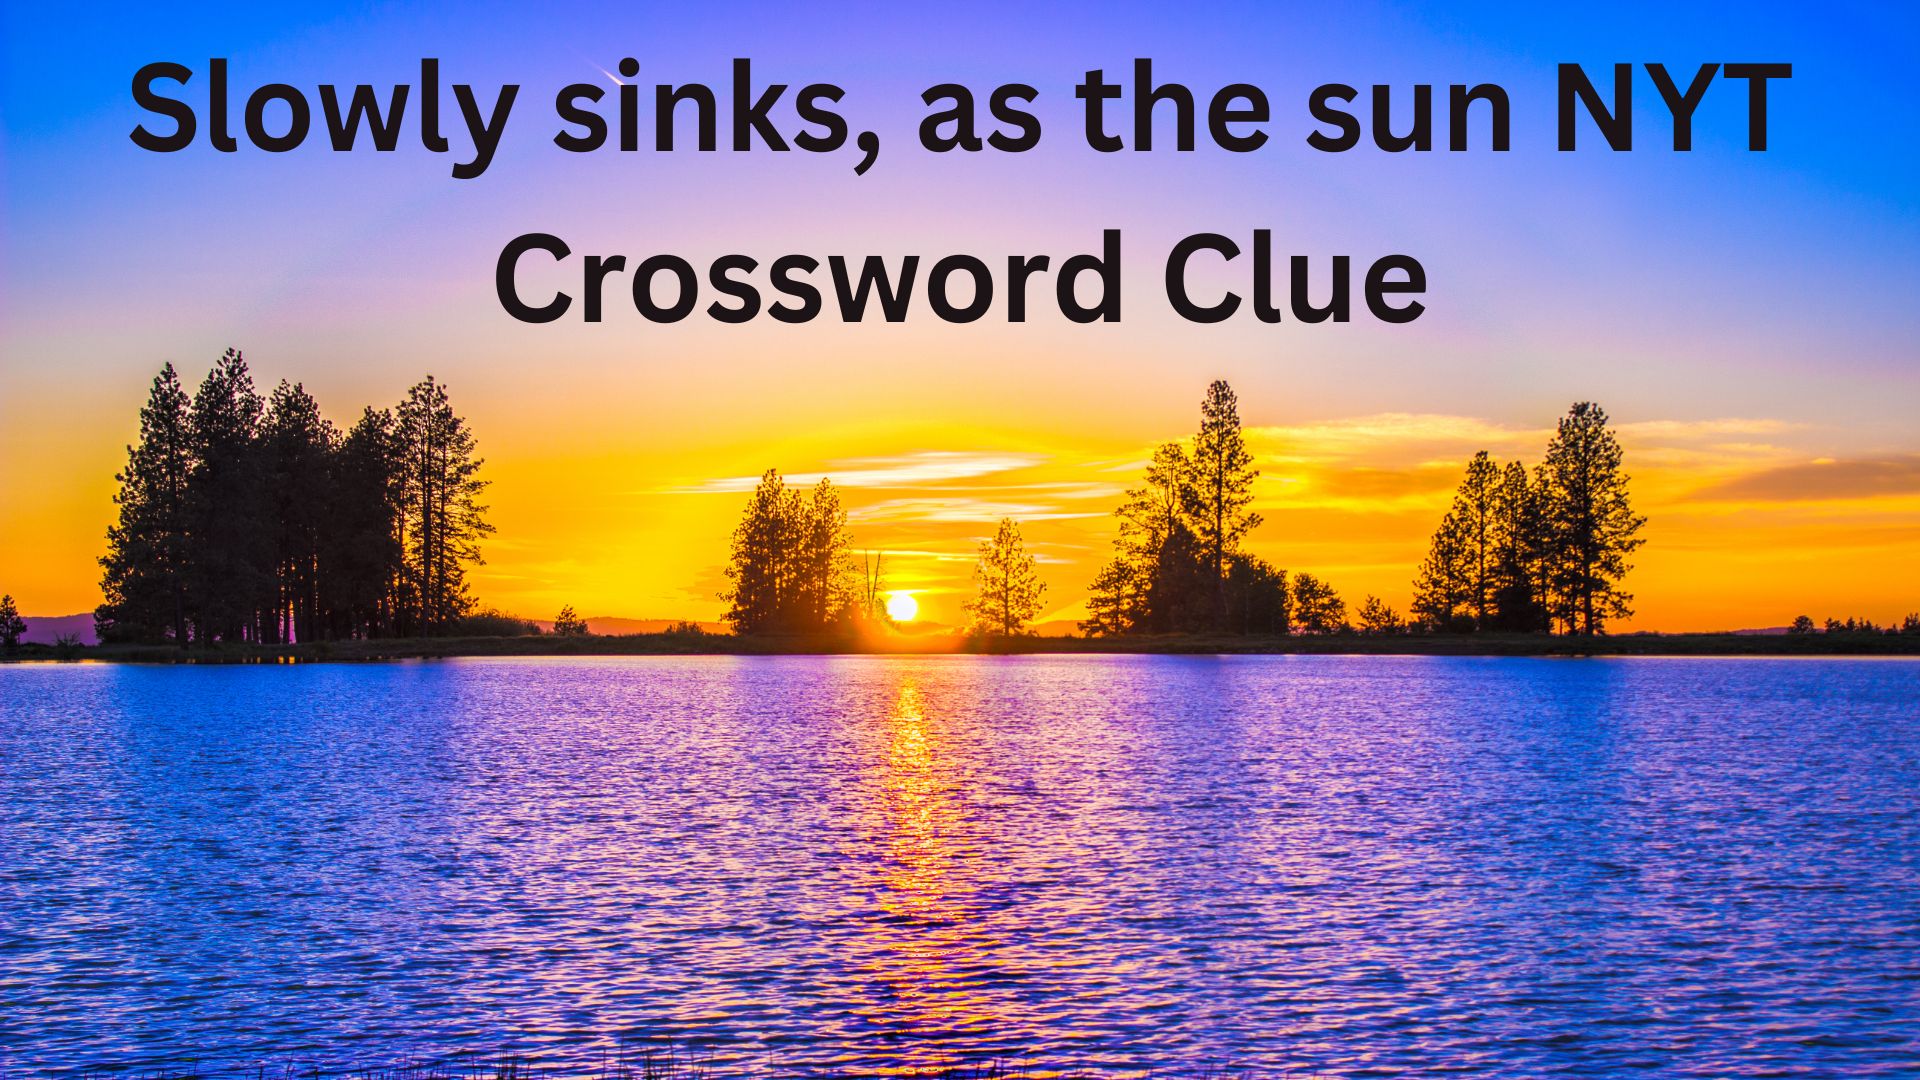 Slowly sinks, as the sun NYT Crossword Clue